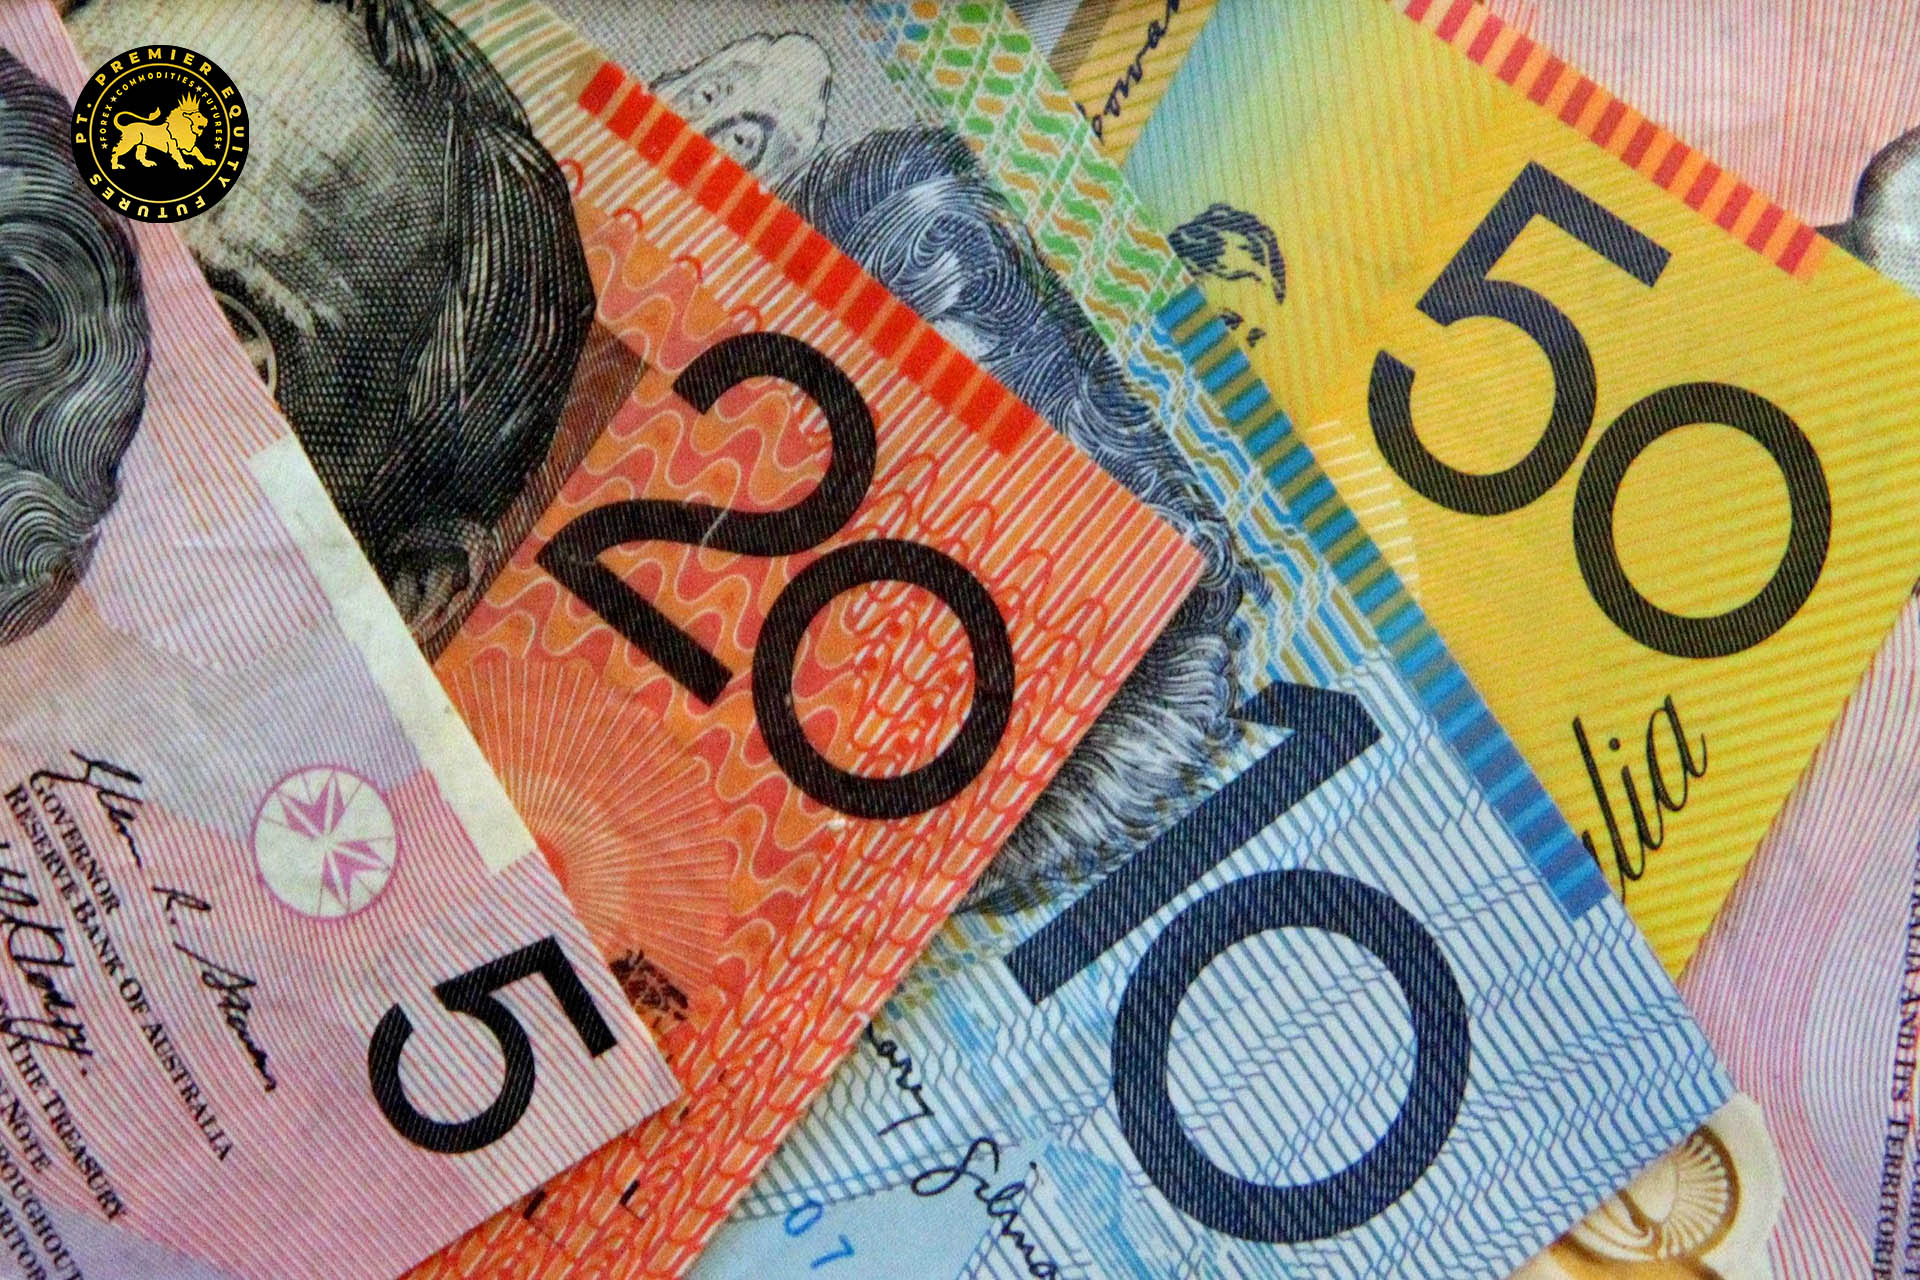 Dolar Australia Bertahan karena Sentimen Risk-On di Tengah Dolar AS yang Stabil